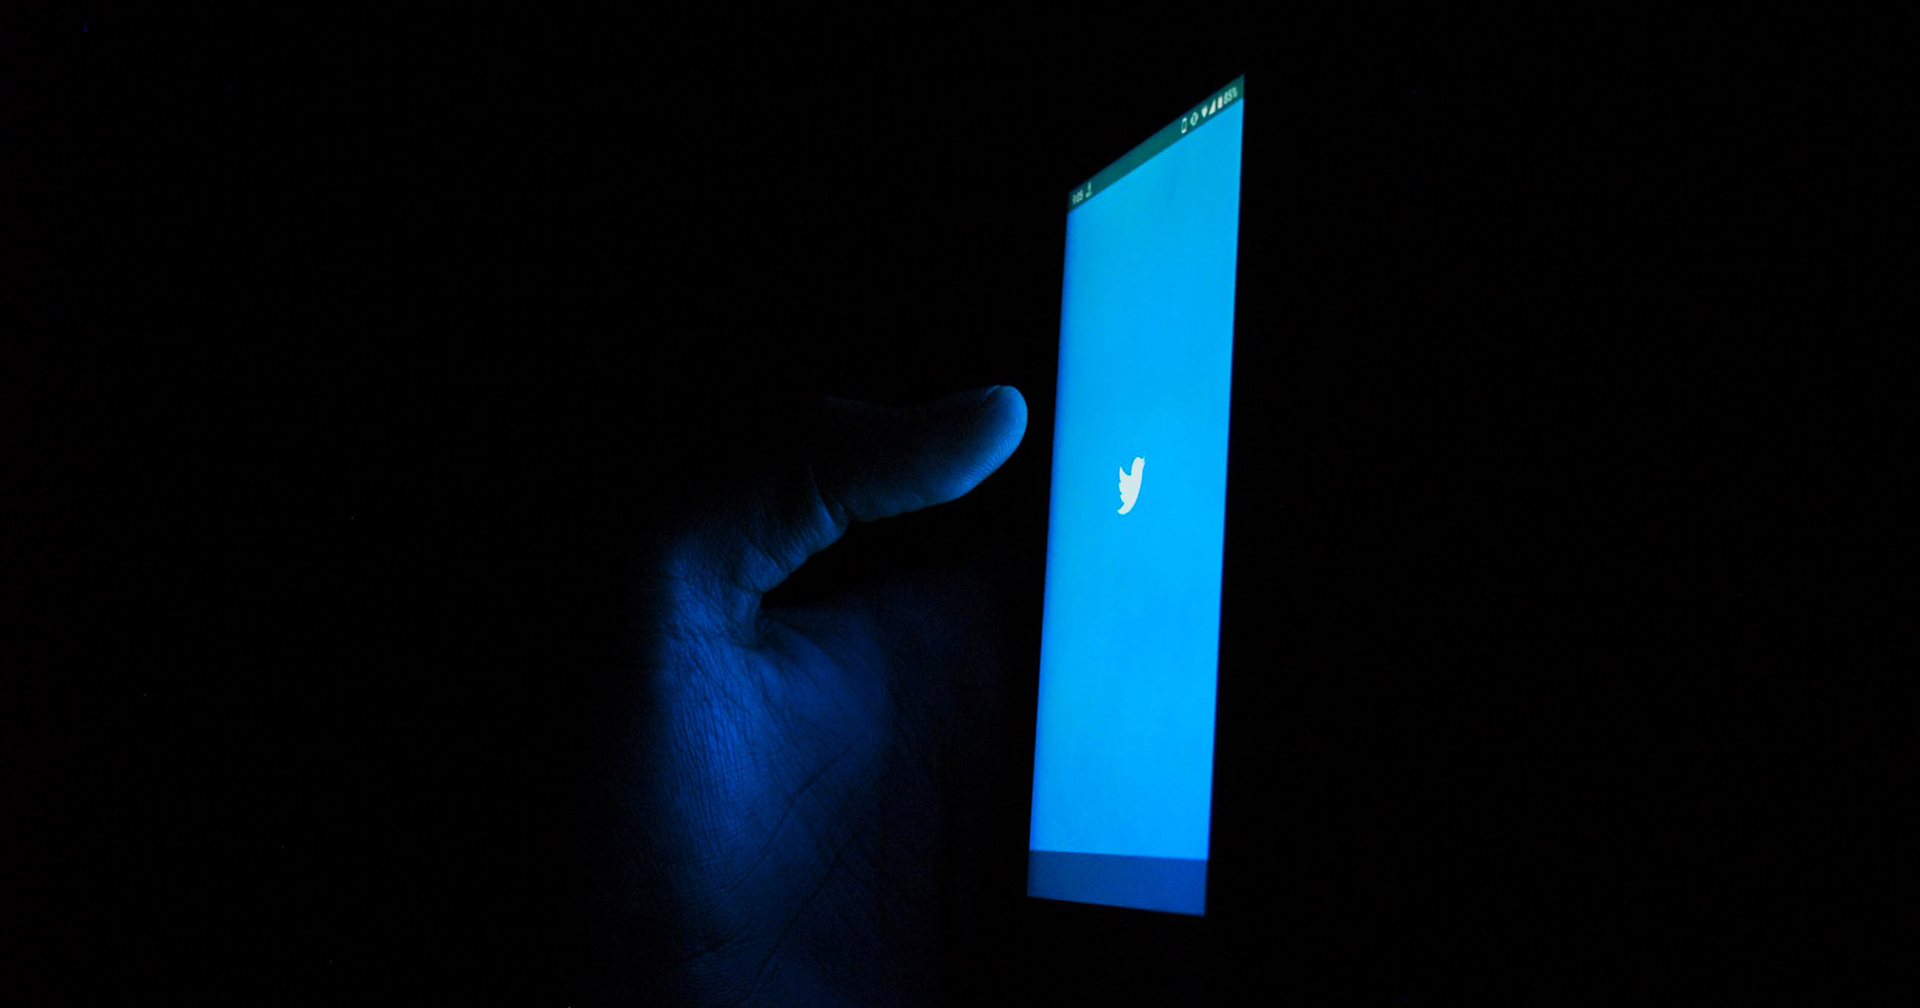 Twitter เรียกคืนฟีเจอร์ป้องกันการฆ่าตัวตาย หลังถูกกดดันจากผู้ใช้งาน